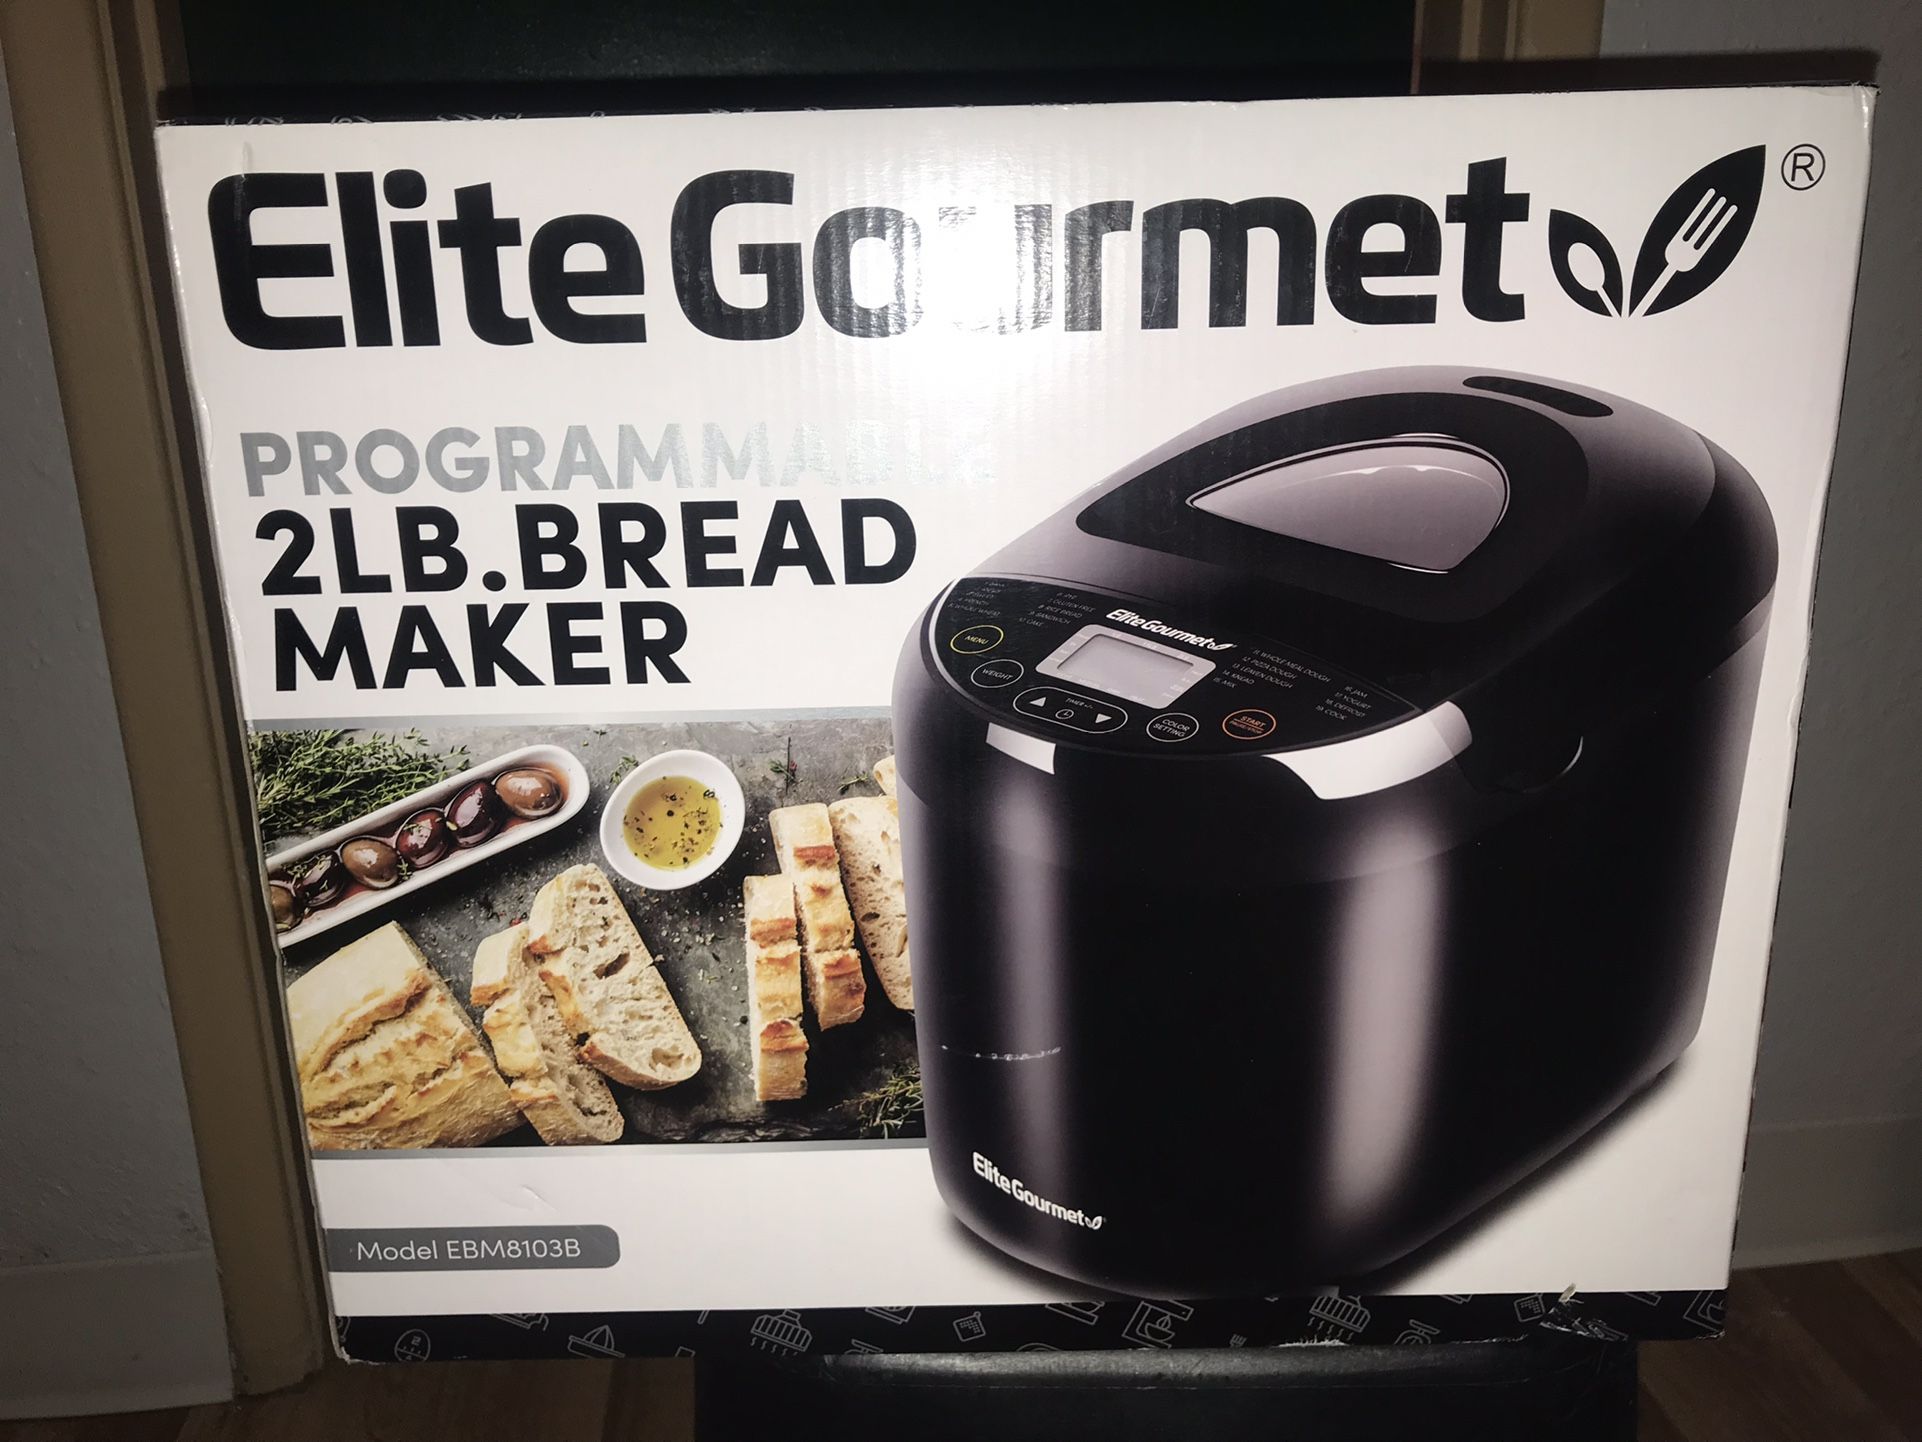 BRAND NEW, NEVER OPENED Elite Gourmet Bread Maker